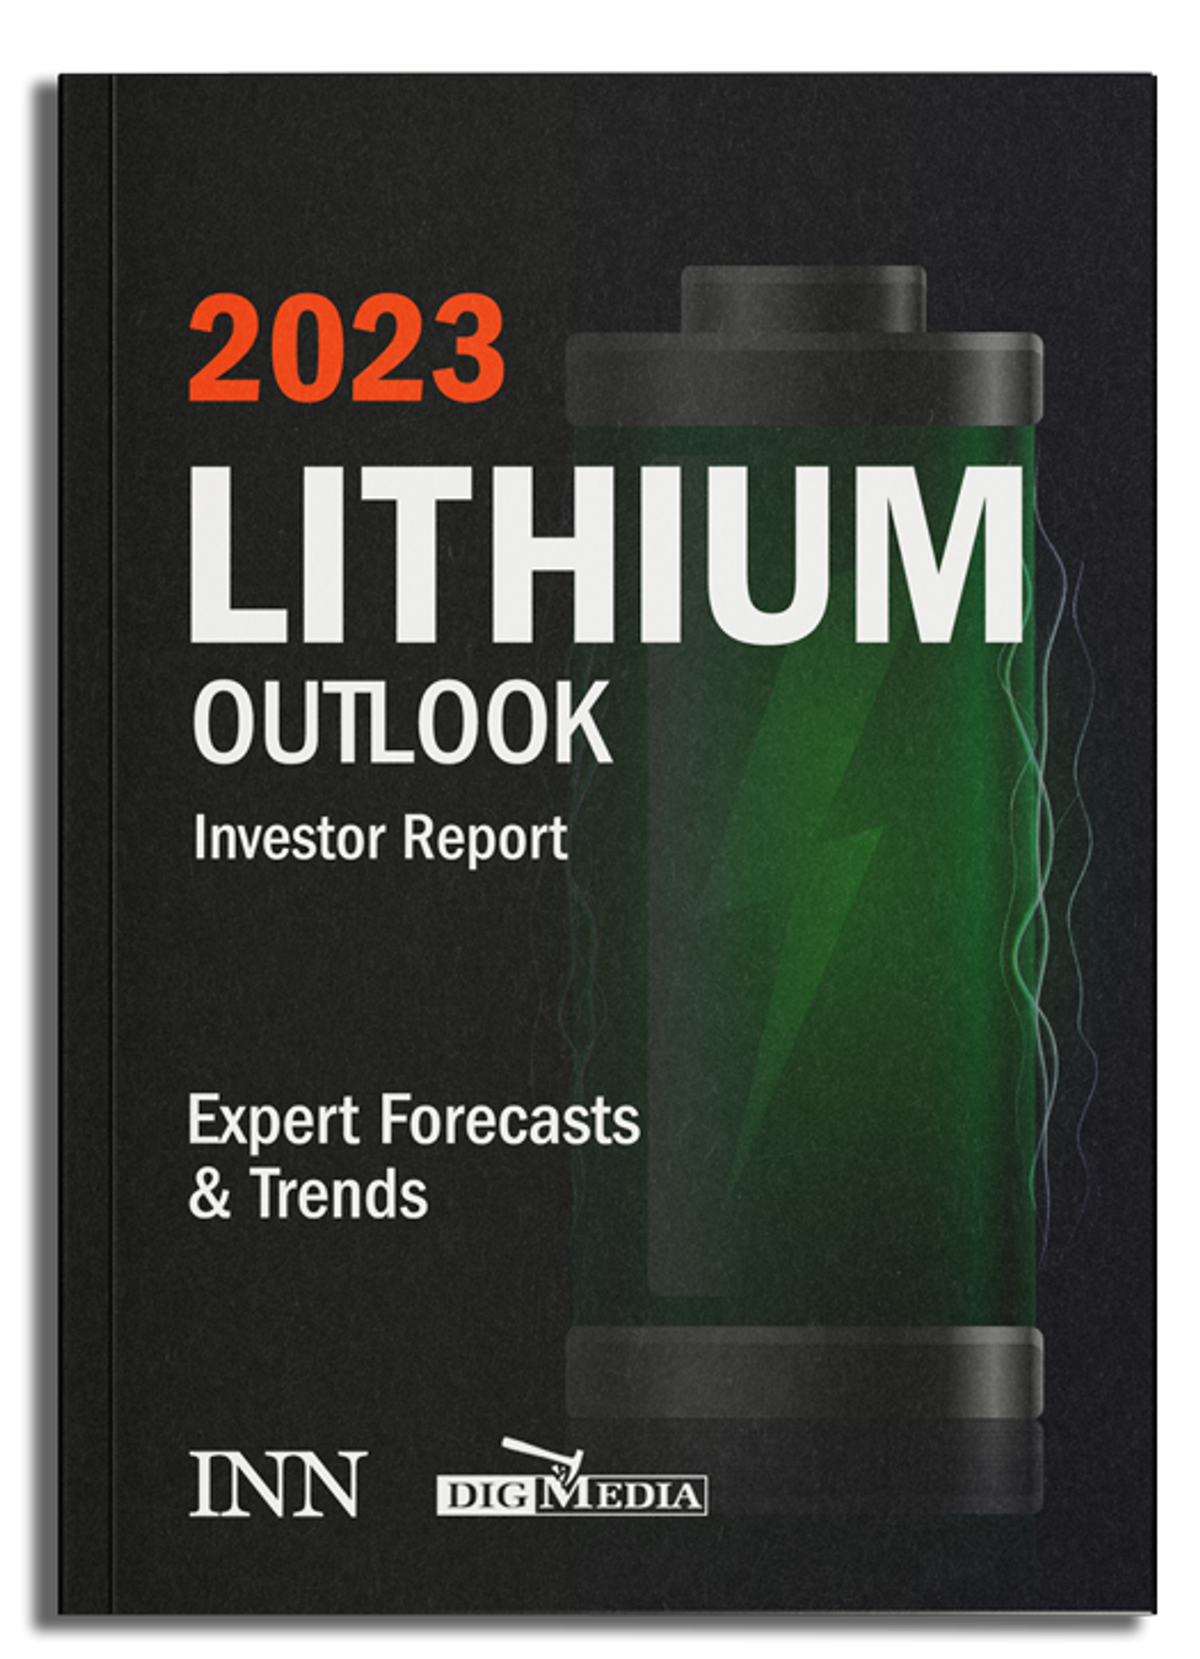 NEW! 2023 Lithium Investor Report